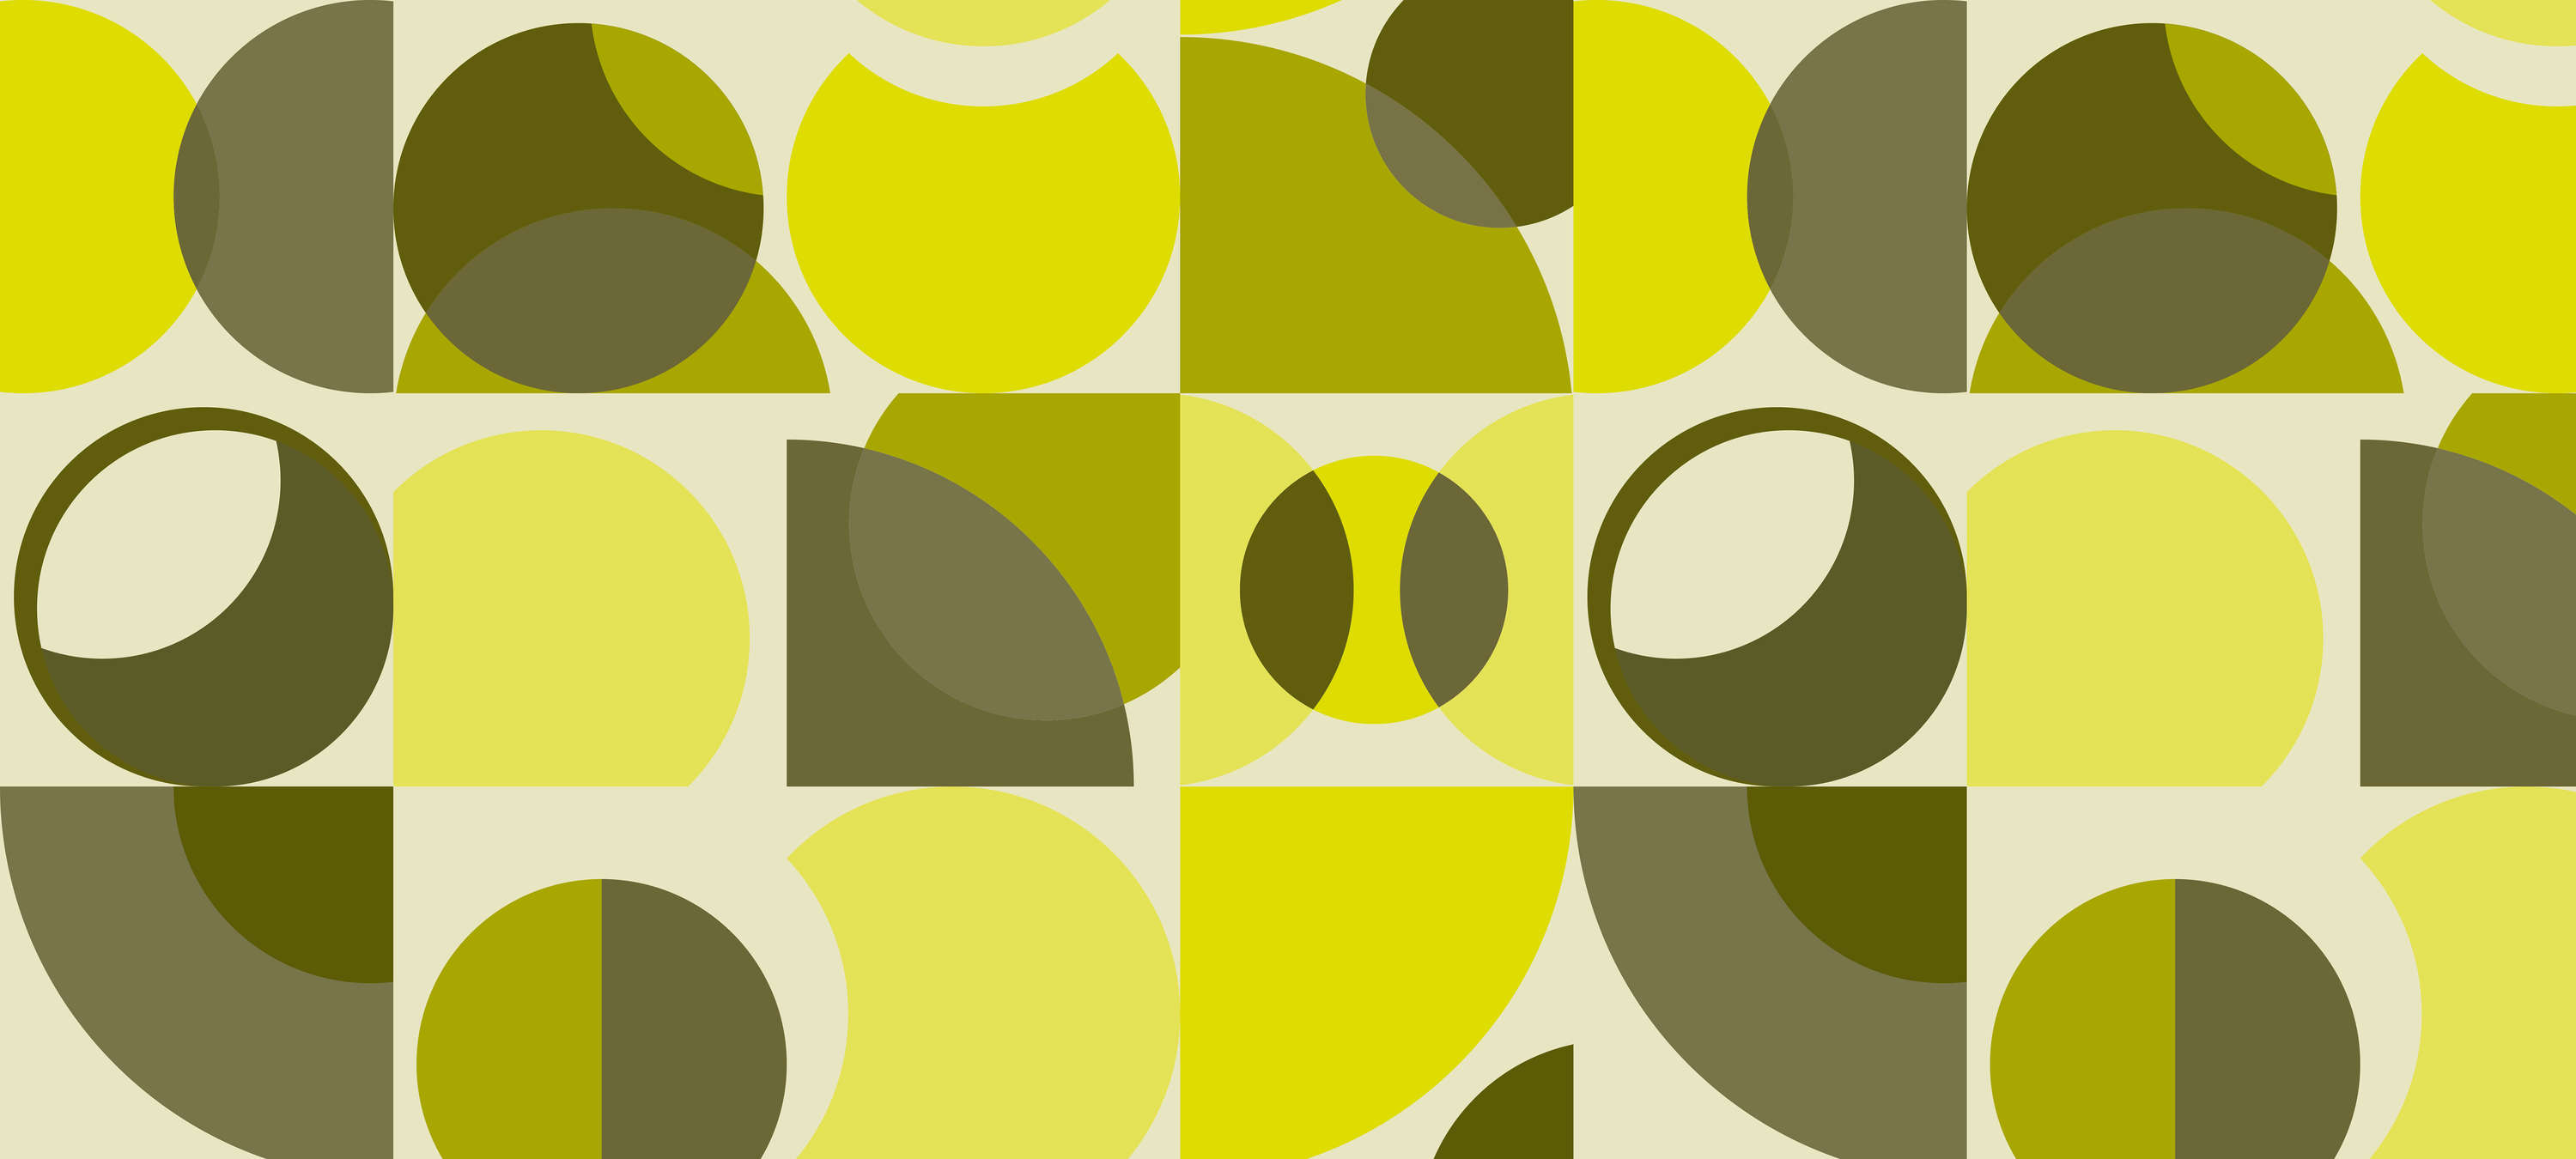             Retro Fototapete mit geometrischem Design – Gelb, Grün, Grau
        